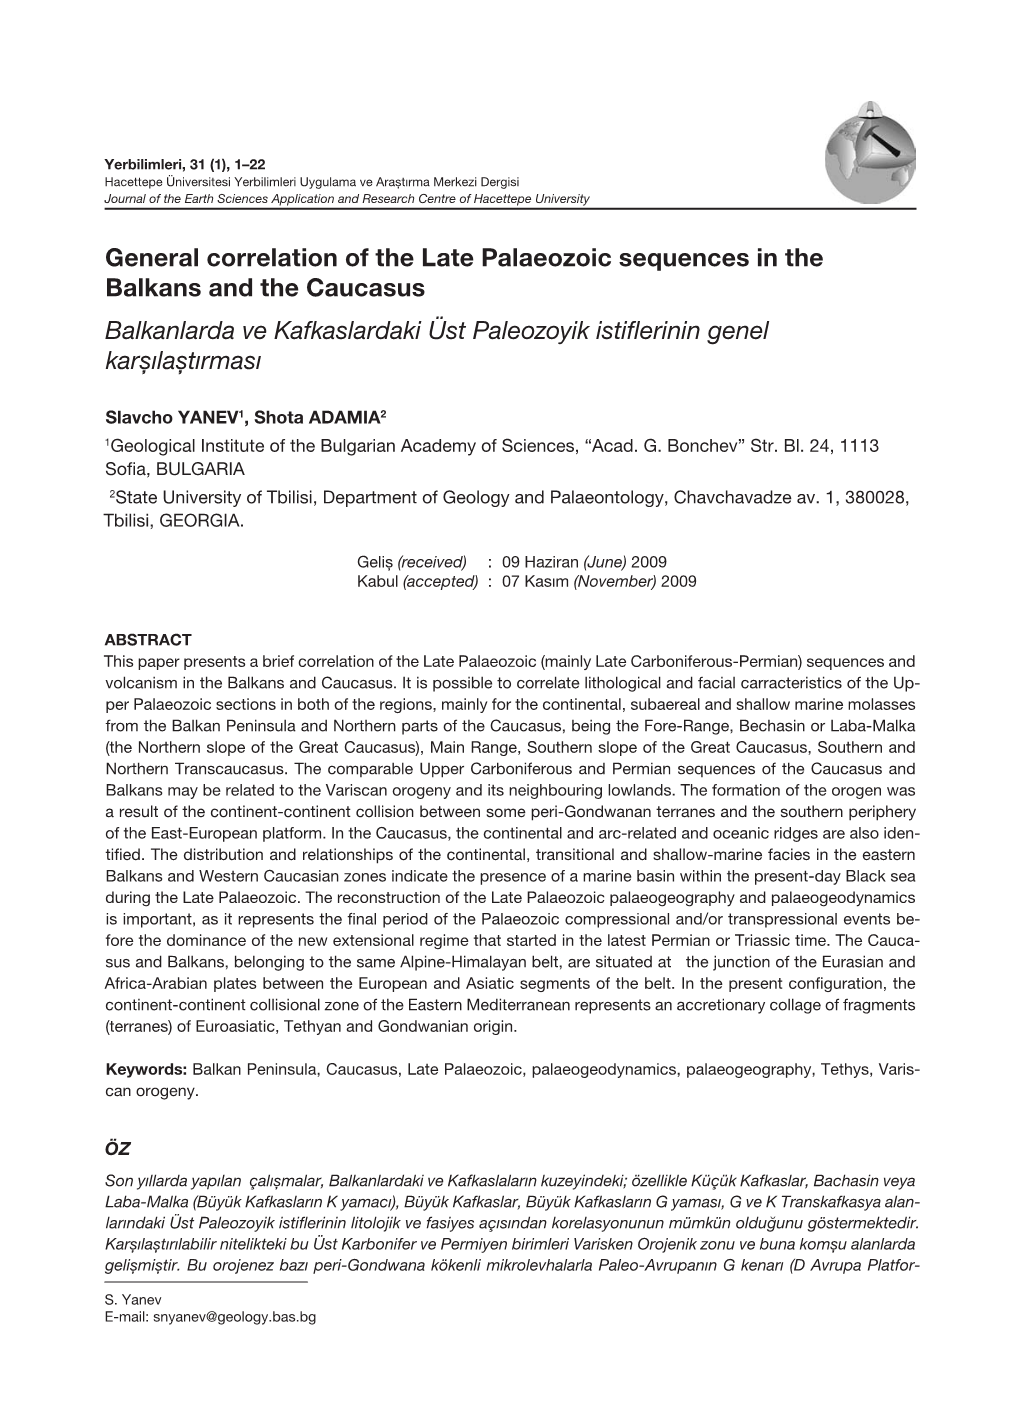 General Correlation of the Late Palaeozoic Sequences in the Balkans and the Caucasus Balkanlarda Ve Kafkaslardaki Üst Paleozoyik Istiflerinin Genel Karşılaştırması